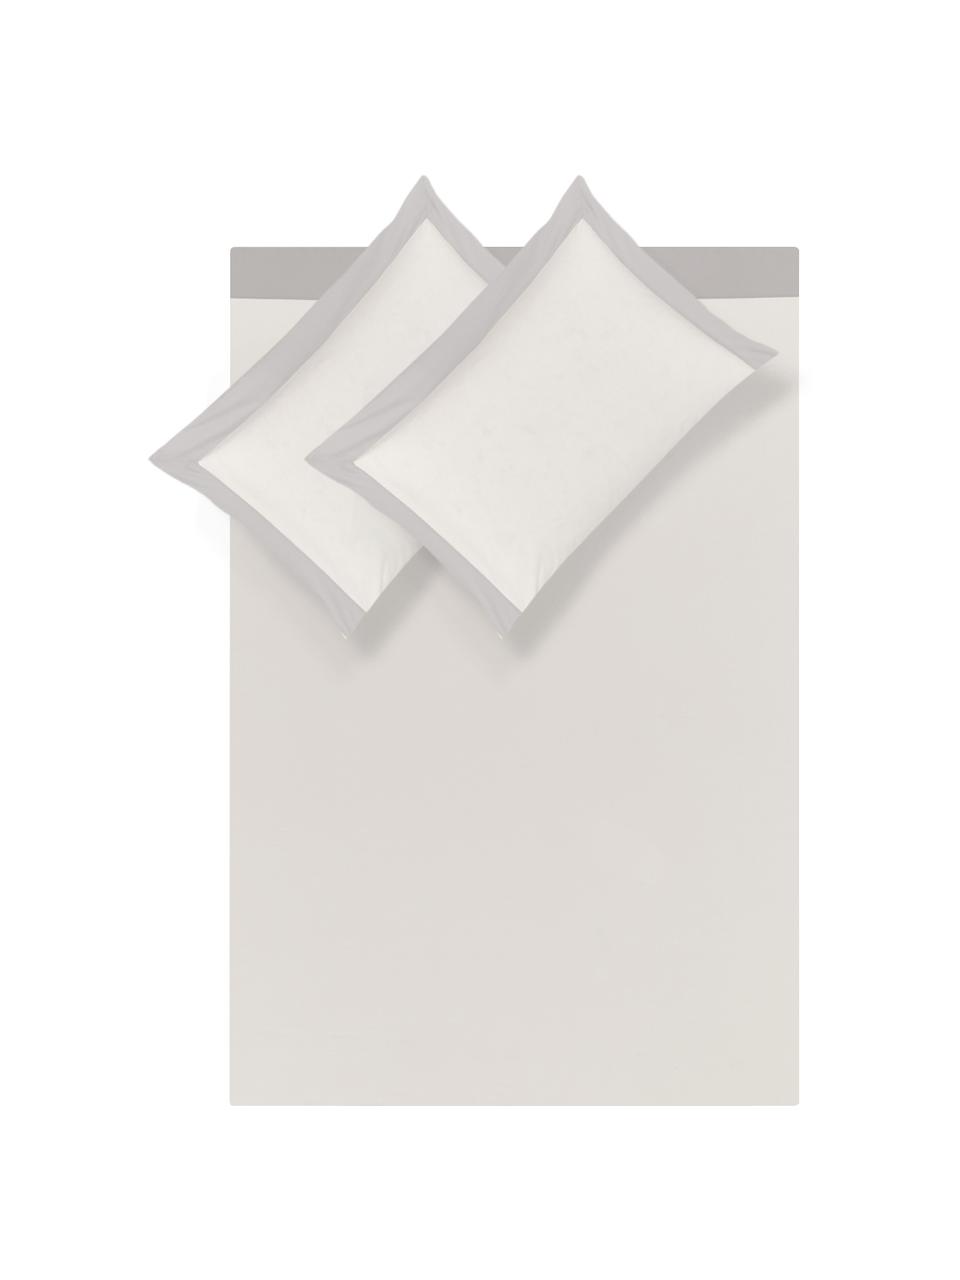 Set lenzuola in percalle Plein 4 pz, Grigio, bianco latteo, 260 x 295 cm